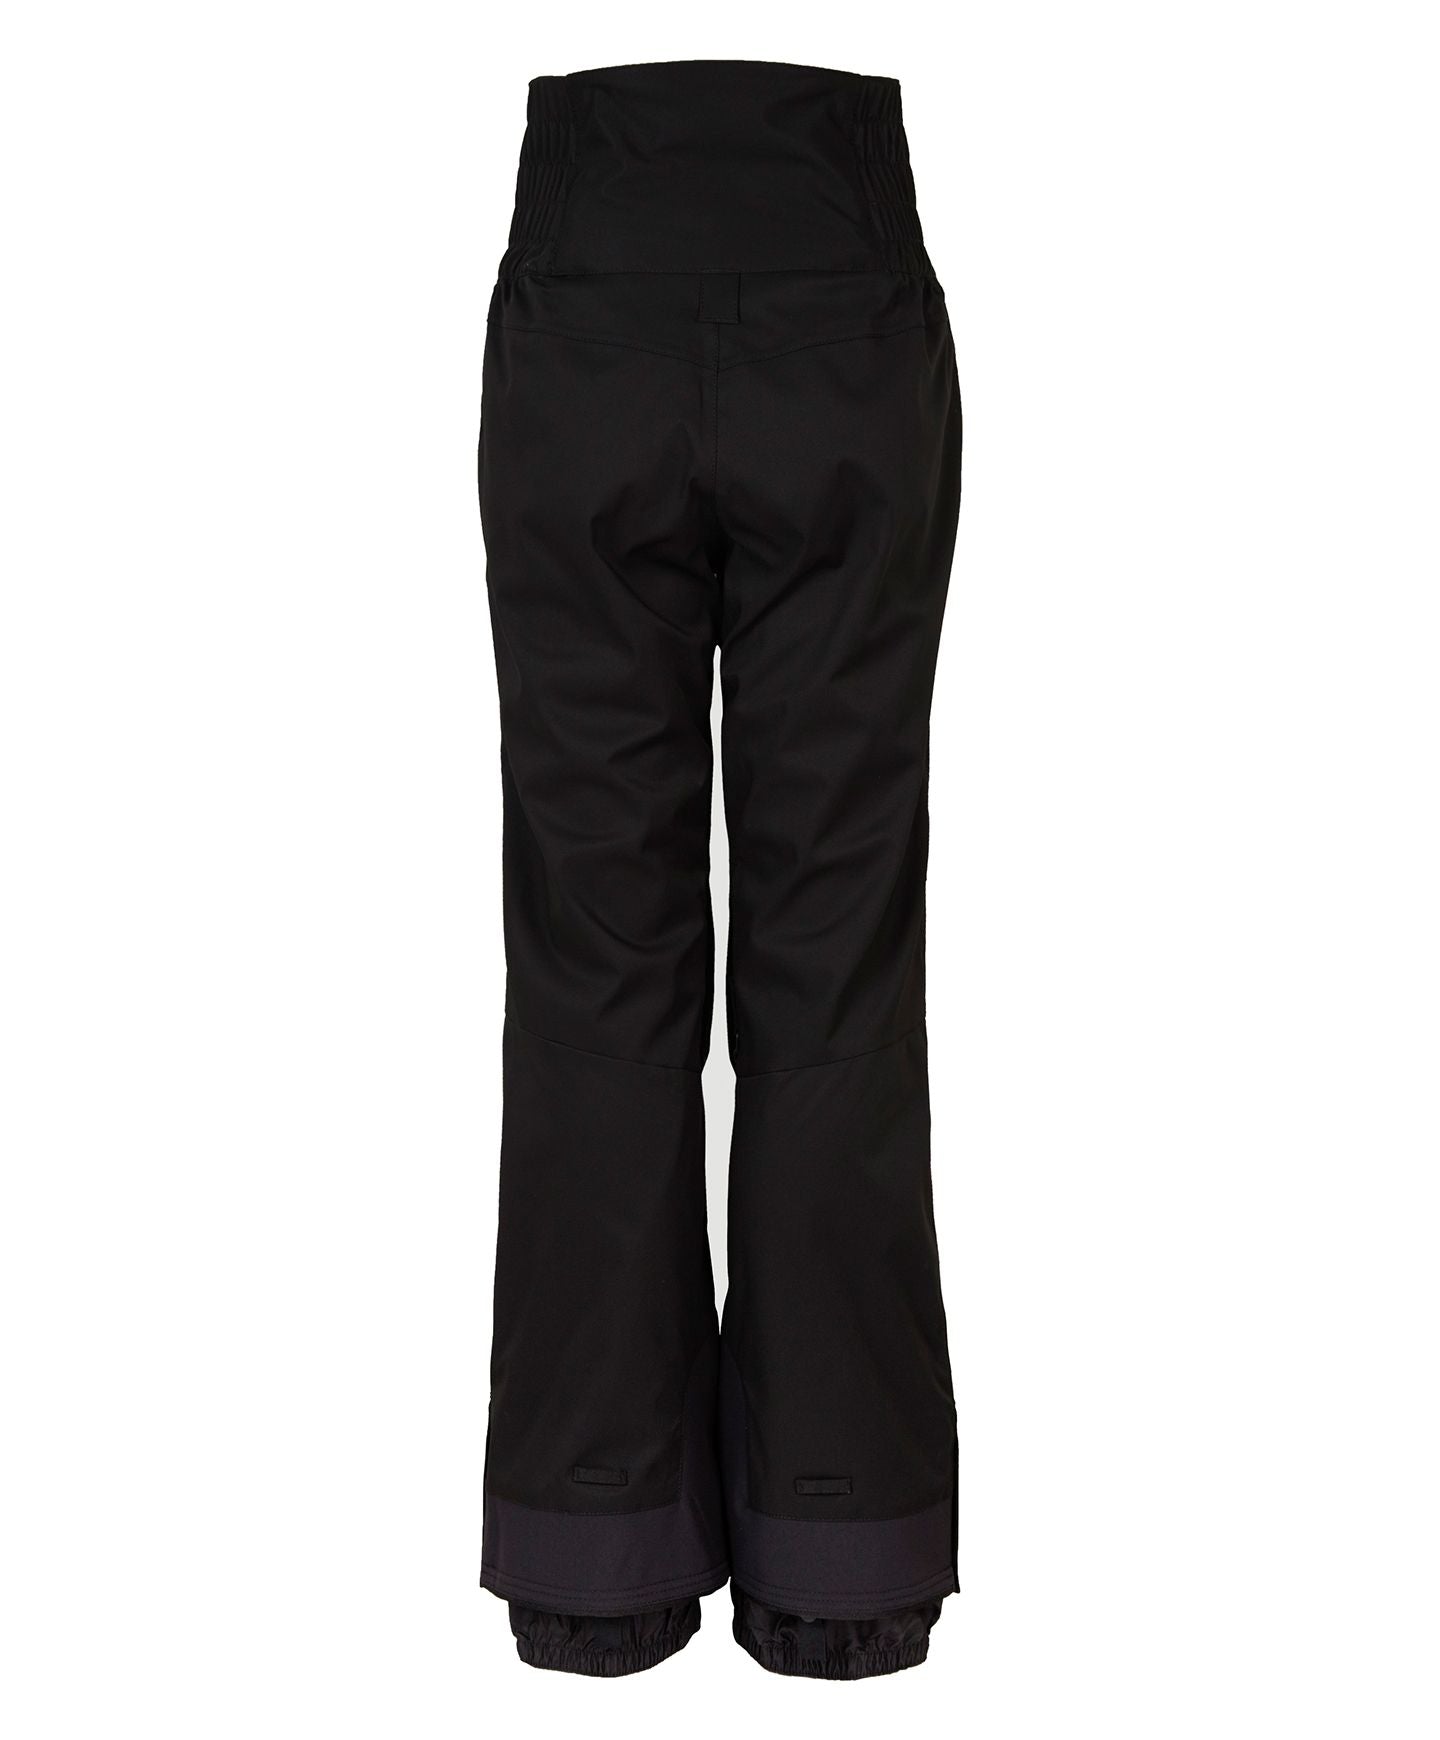 Women's Armetrine Snow Pants - Black Out